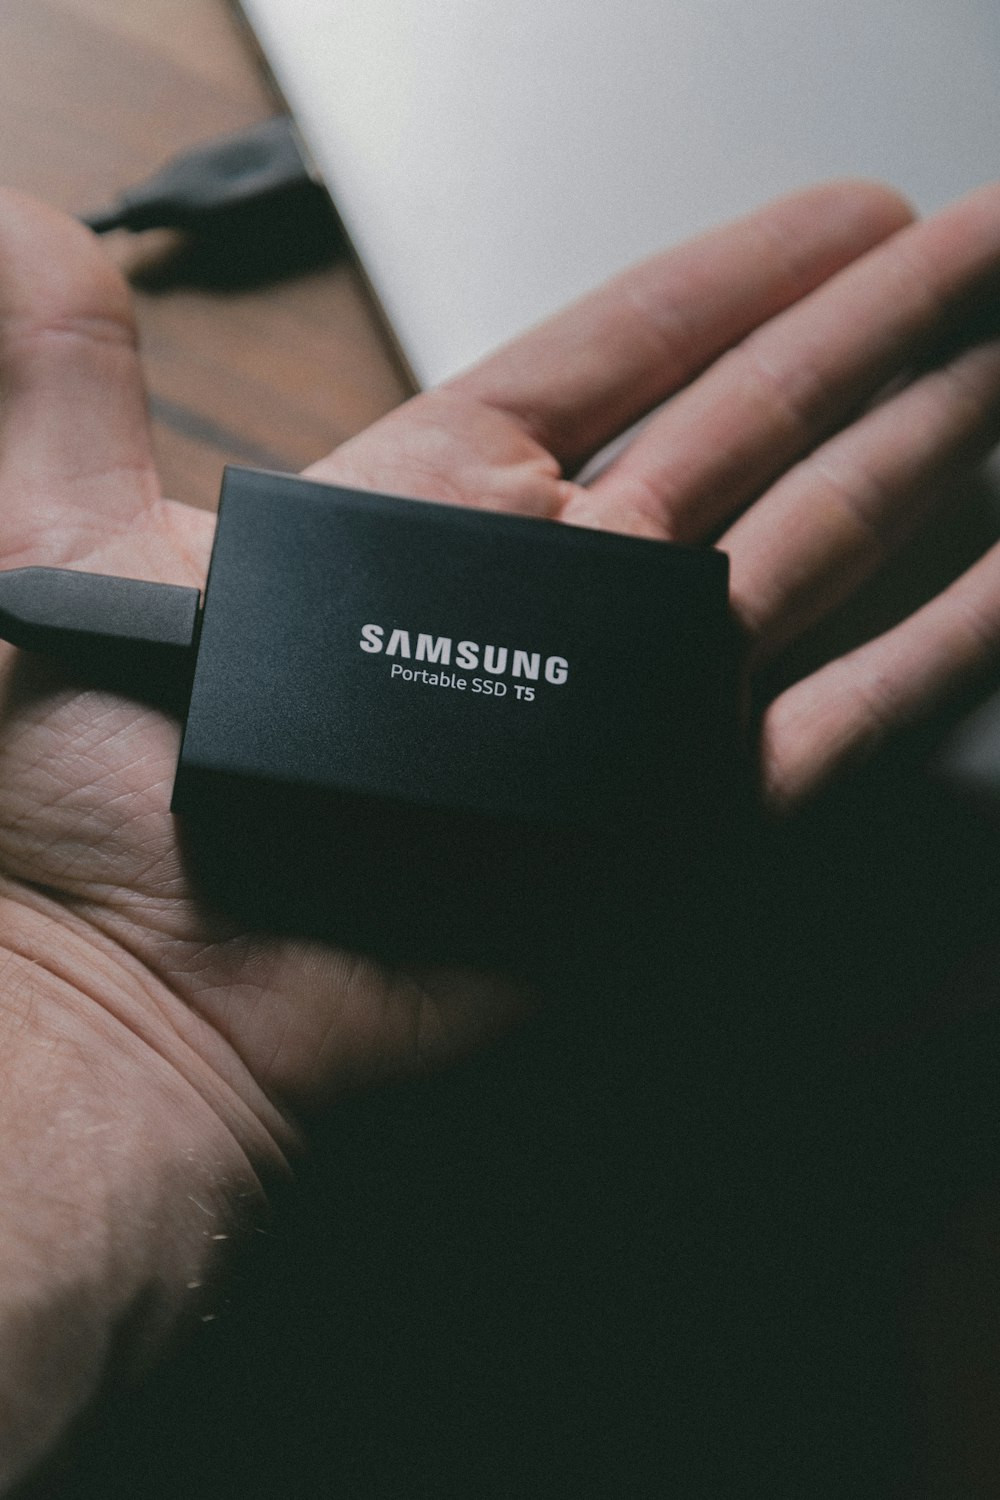 SSD portatile Samsung T5 sulla mano della persona